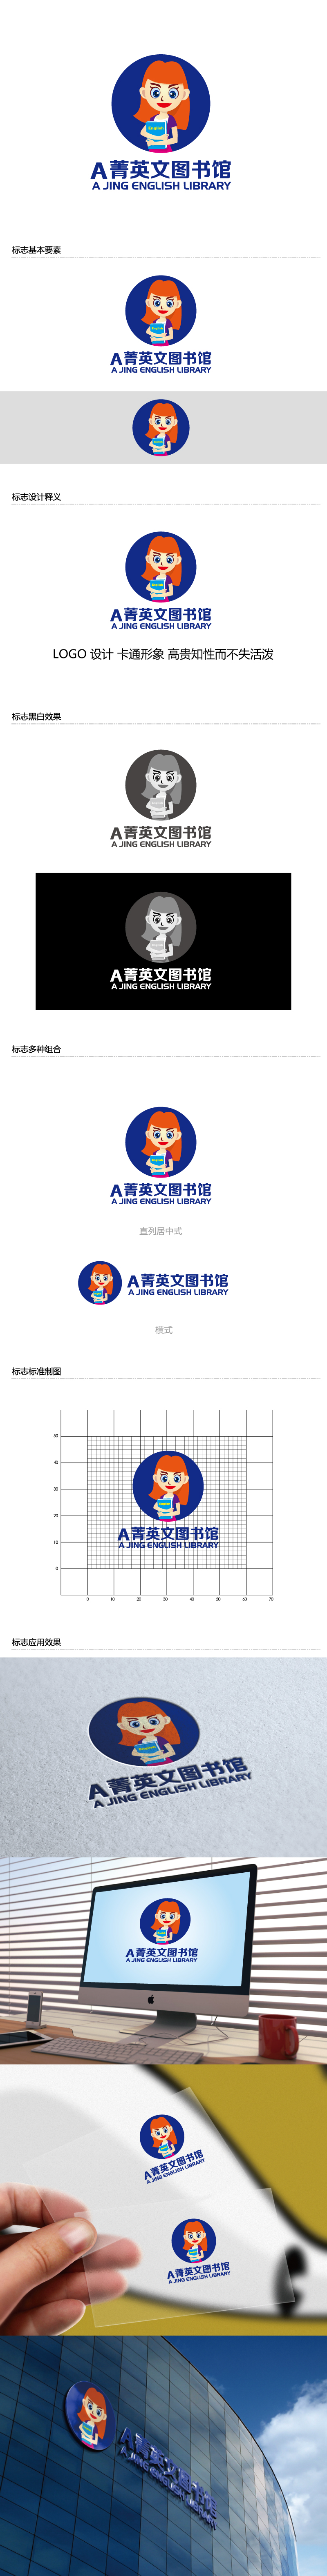 张俊的A菁英文图书馆logo设计